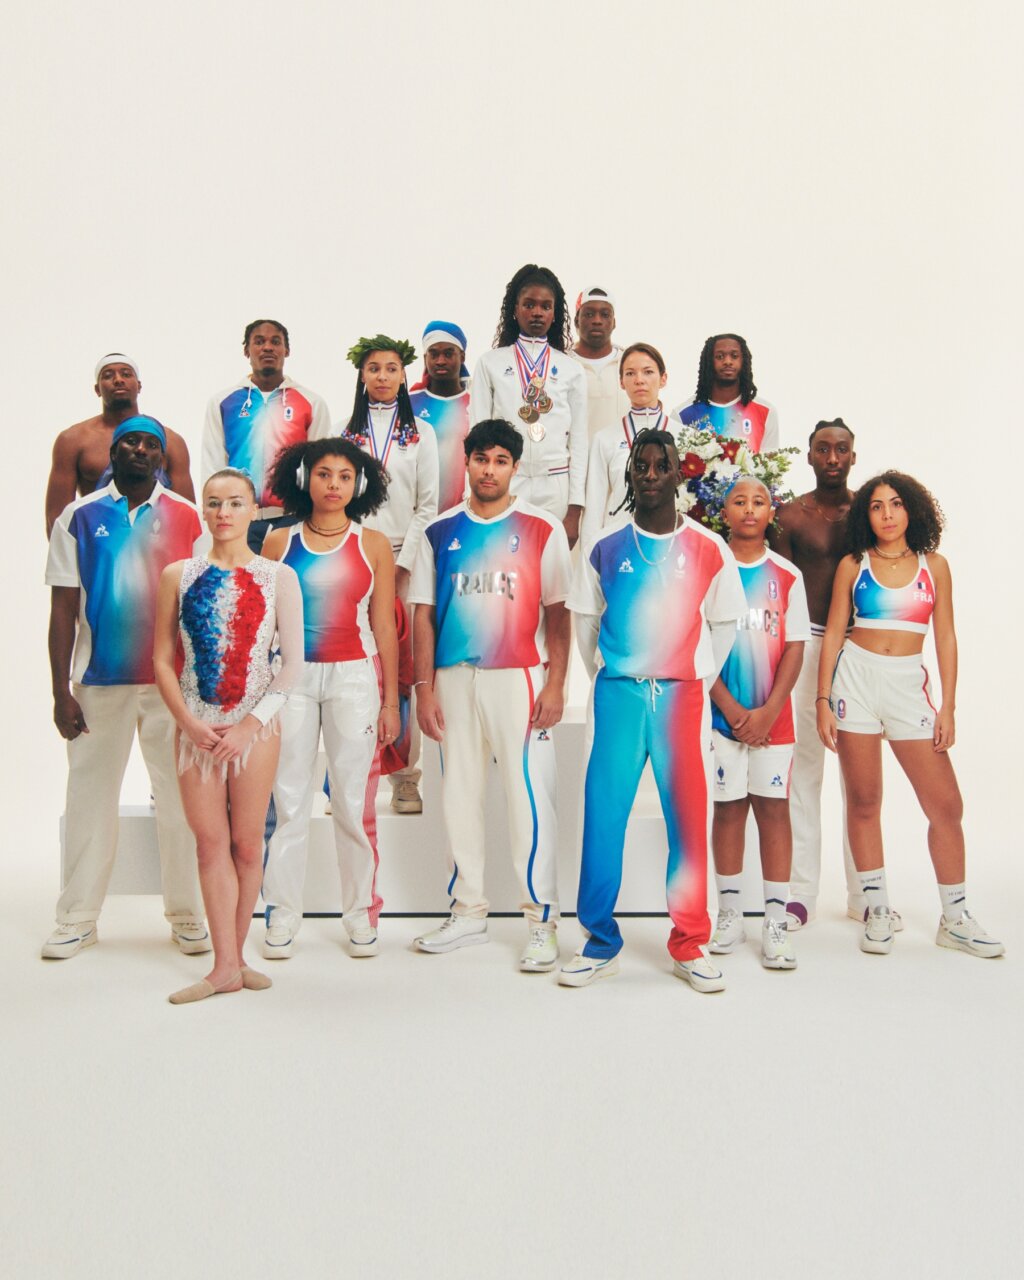 パリ最新情報「パリ五輪、フランス選手団の競技衣装は、三色のグラデーションが鮮やかに」